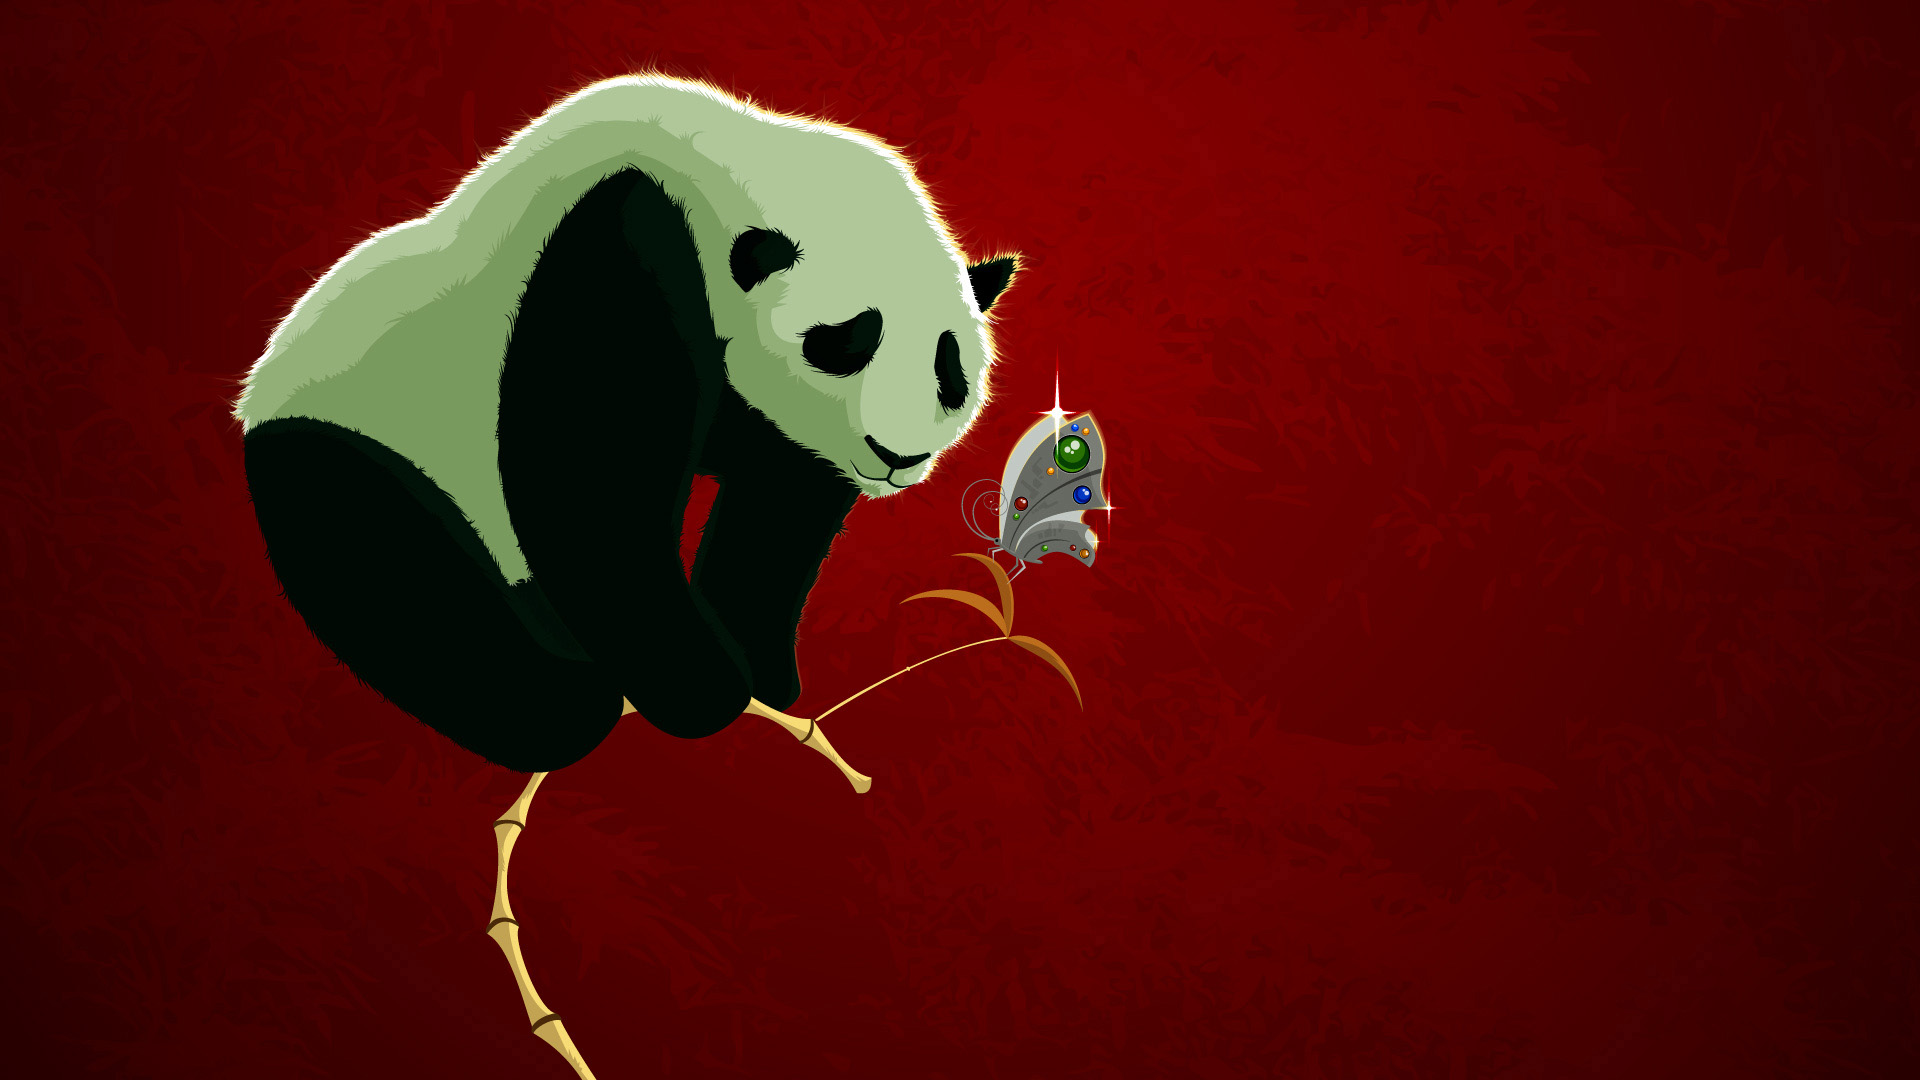 panda bears, butterflies - desktop wallpaper